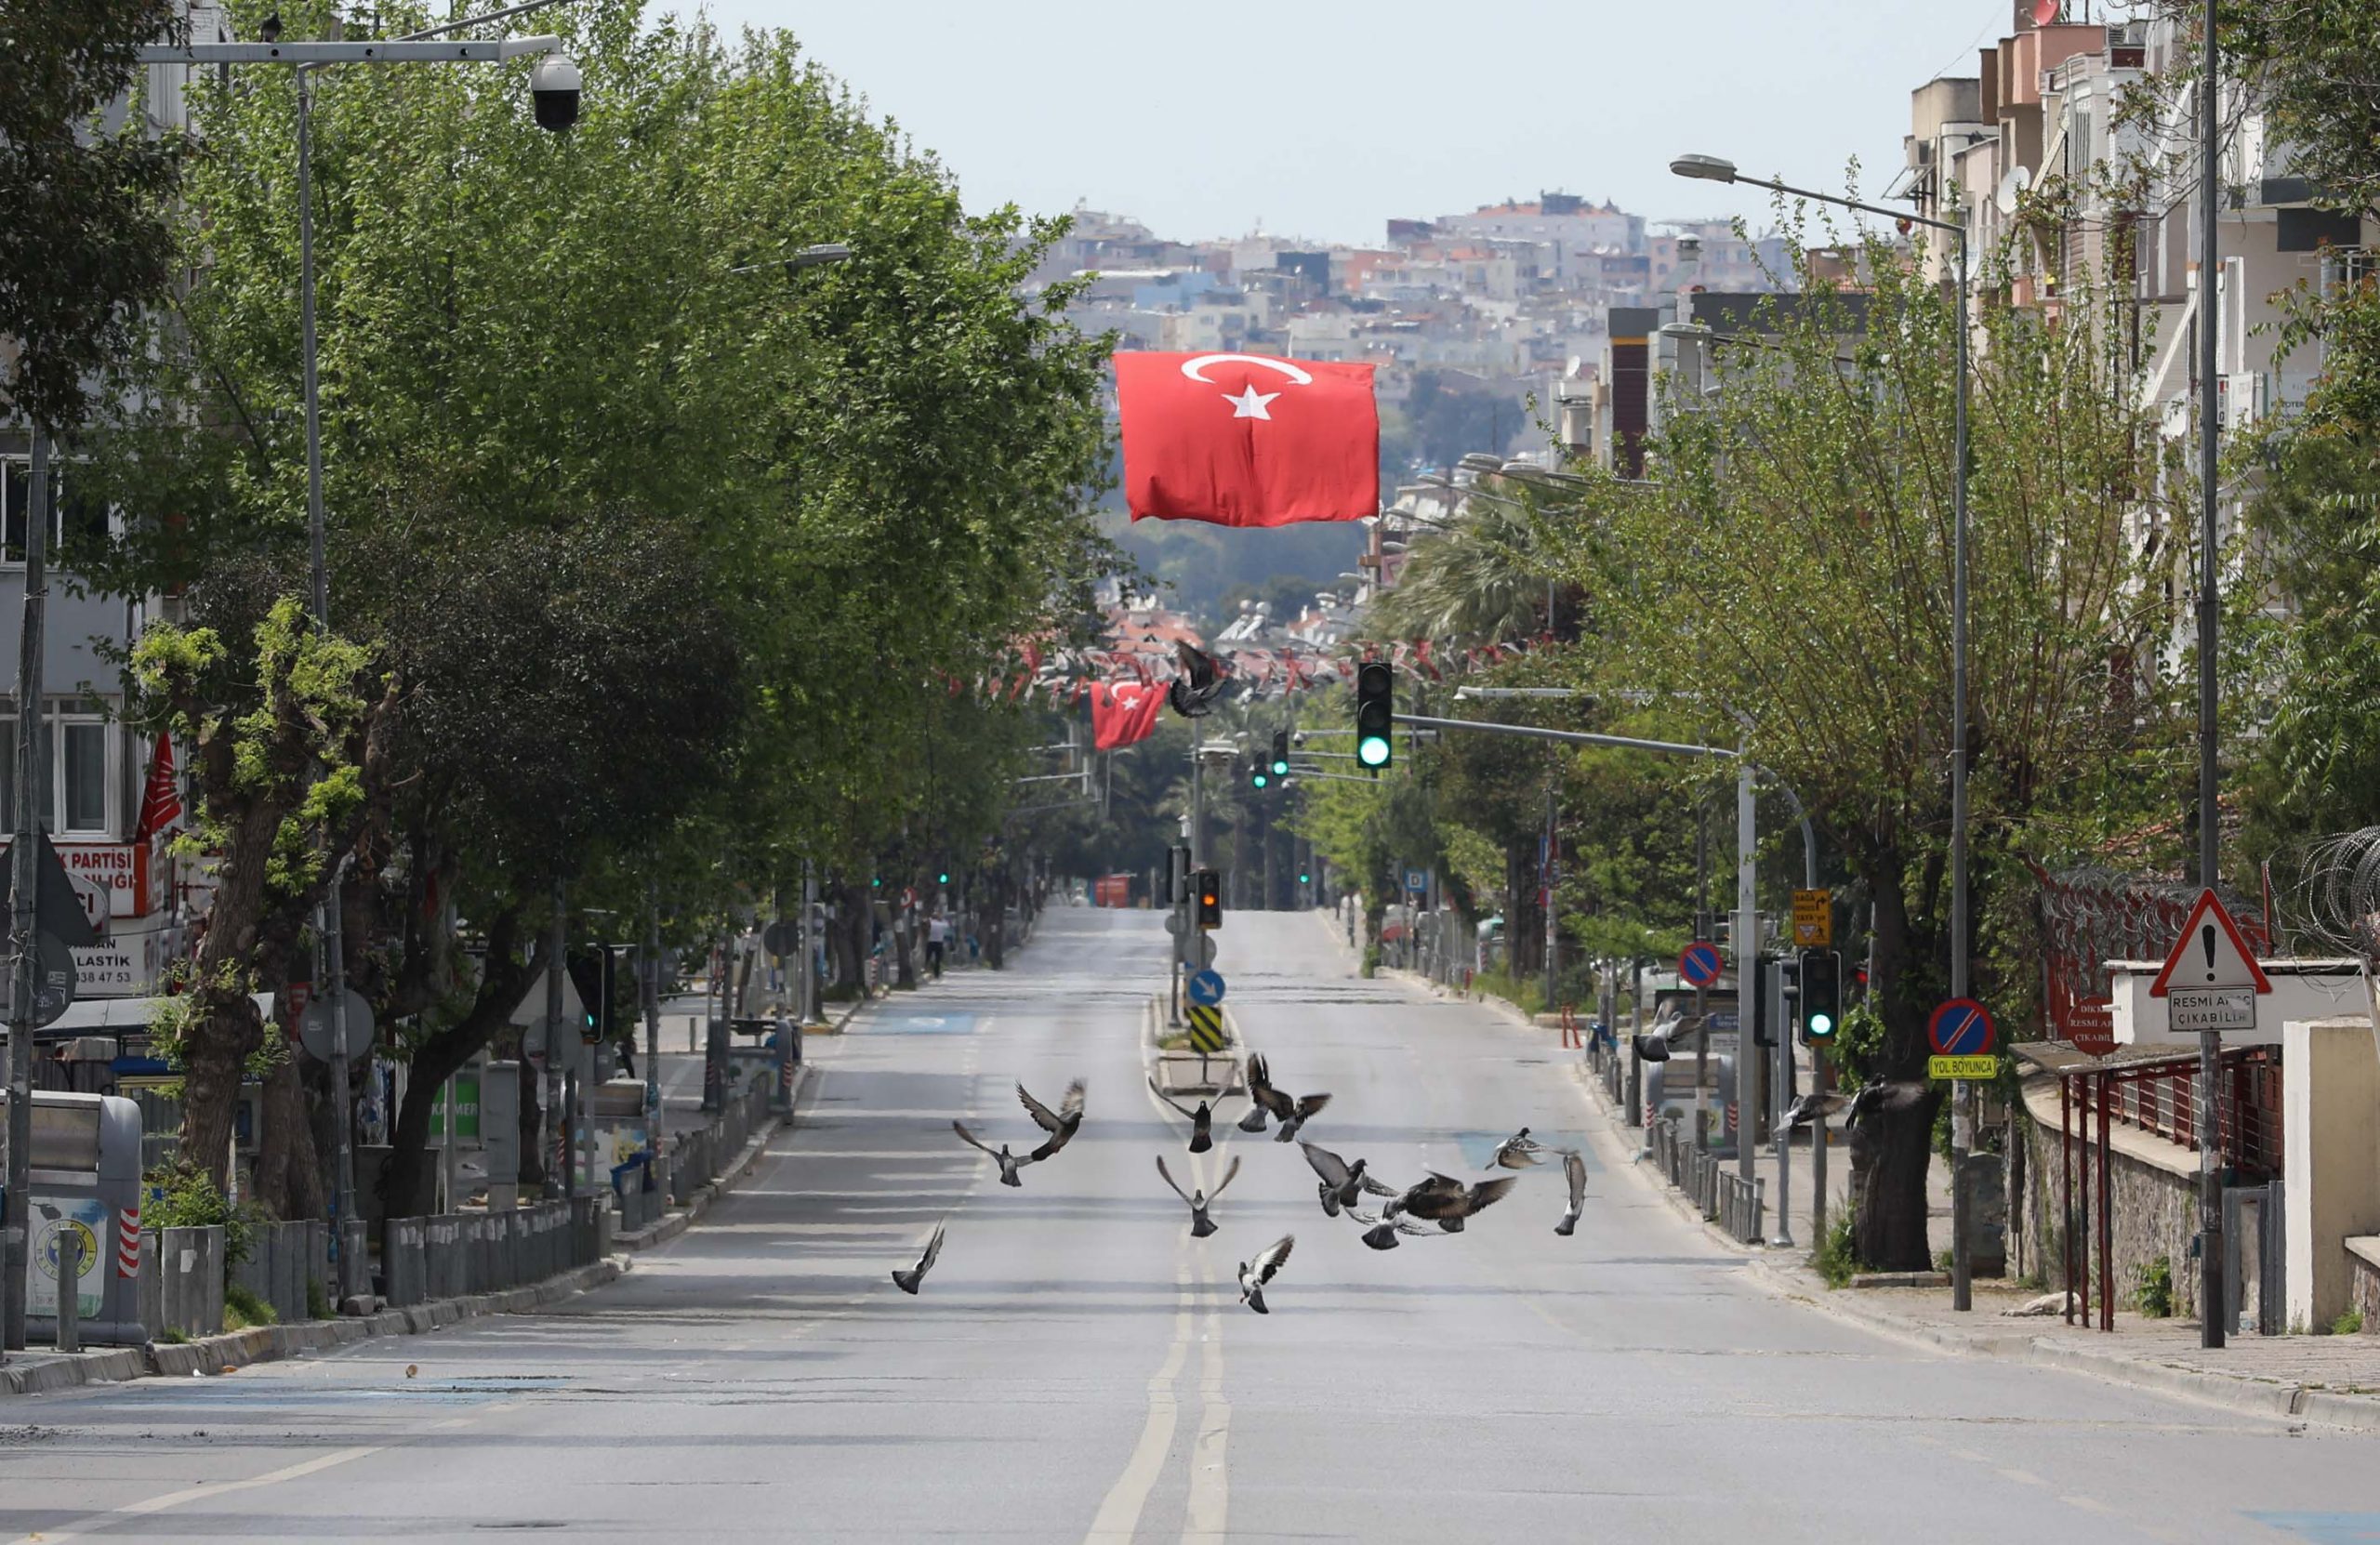 Buca Belediyesi Travel Turkey’de